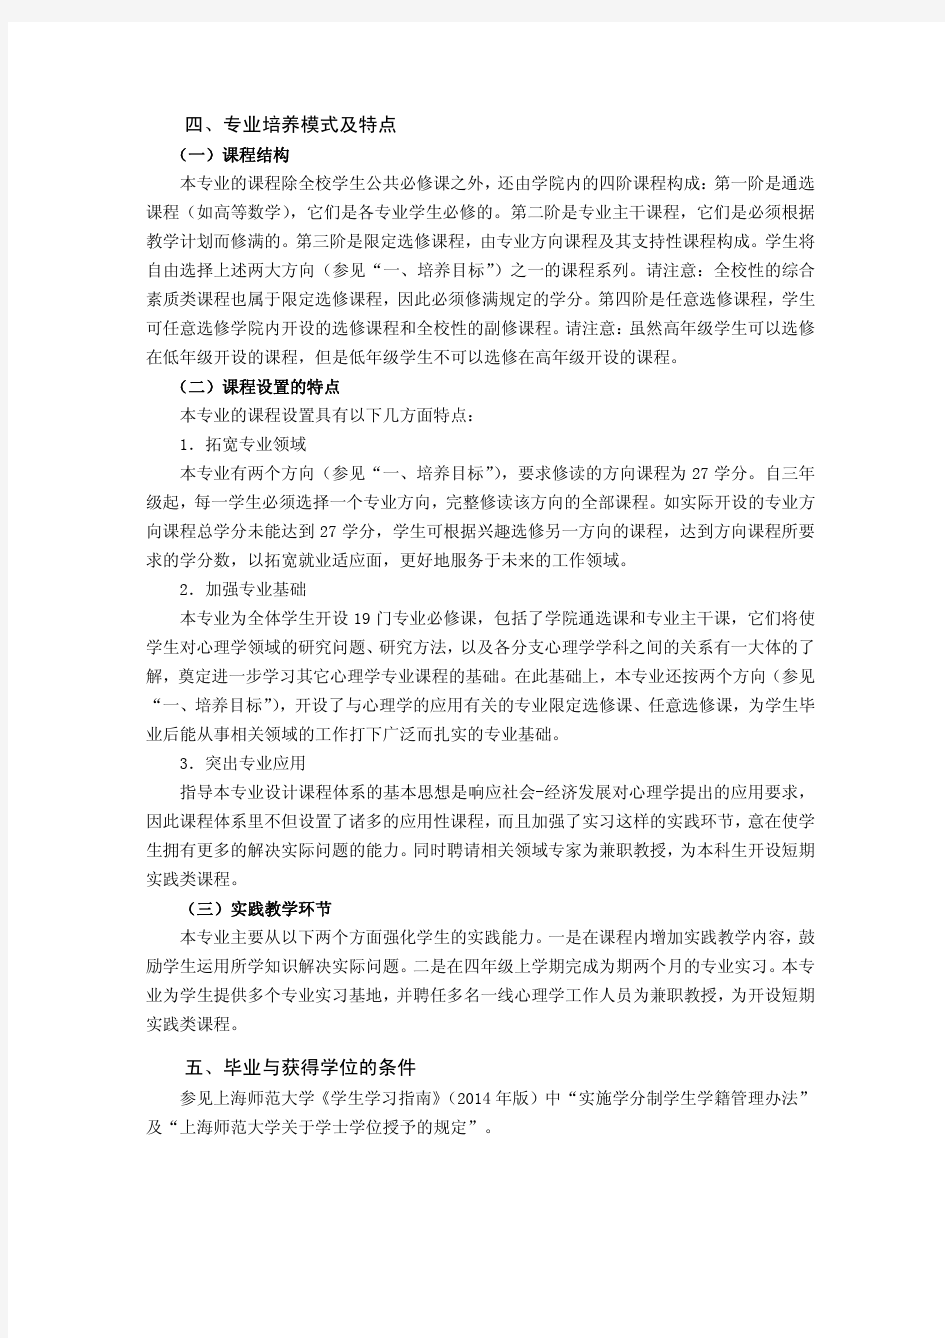 上海师范大学级-教育学院-应用心理学专业